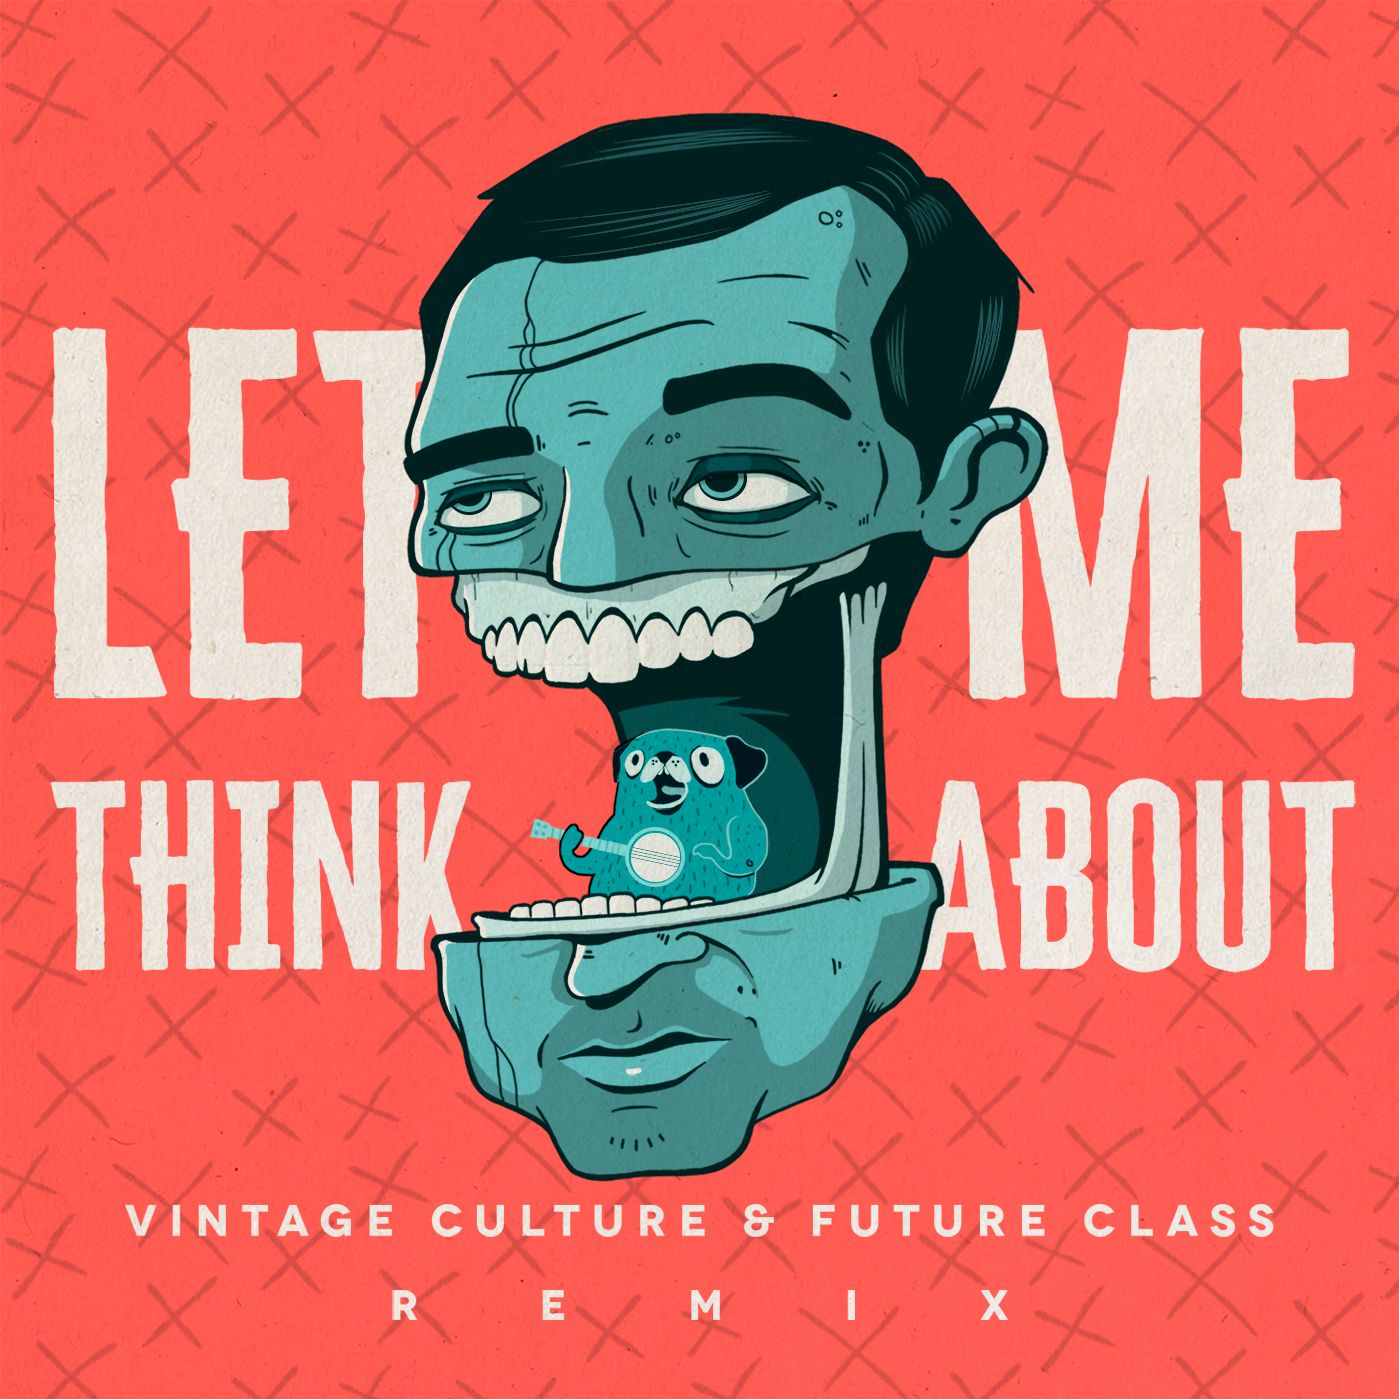 Ladata Vintage Culture & Future Class - Let Me Think About